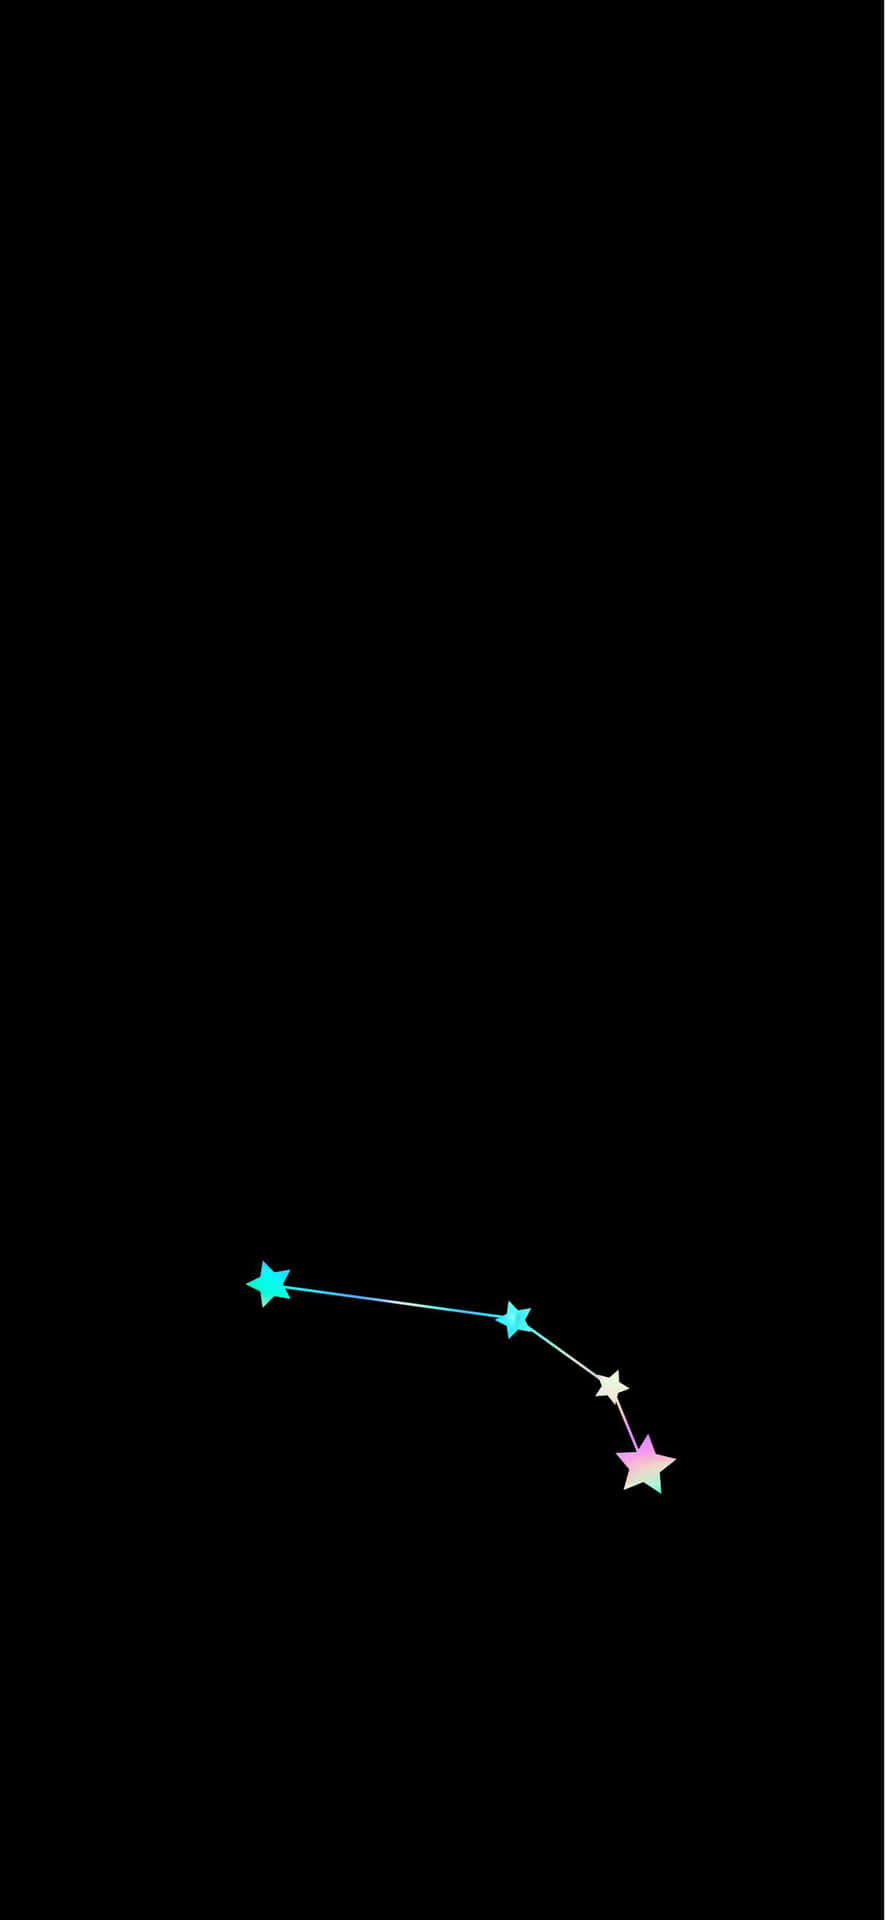 Incredibilesfondo Zodiacale Ariete Per Iphone. Sfondo